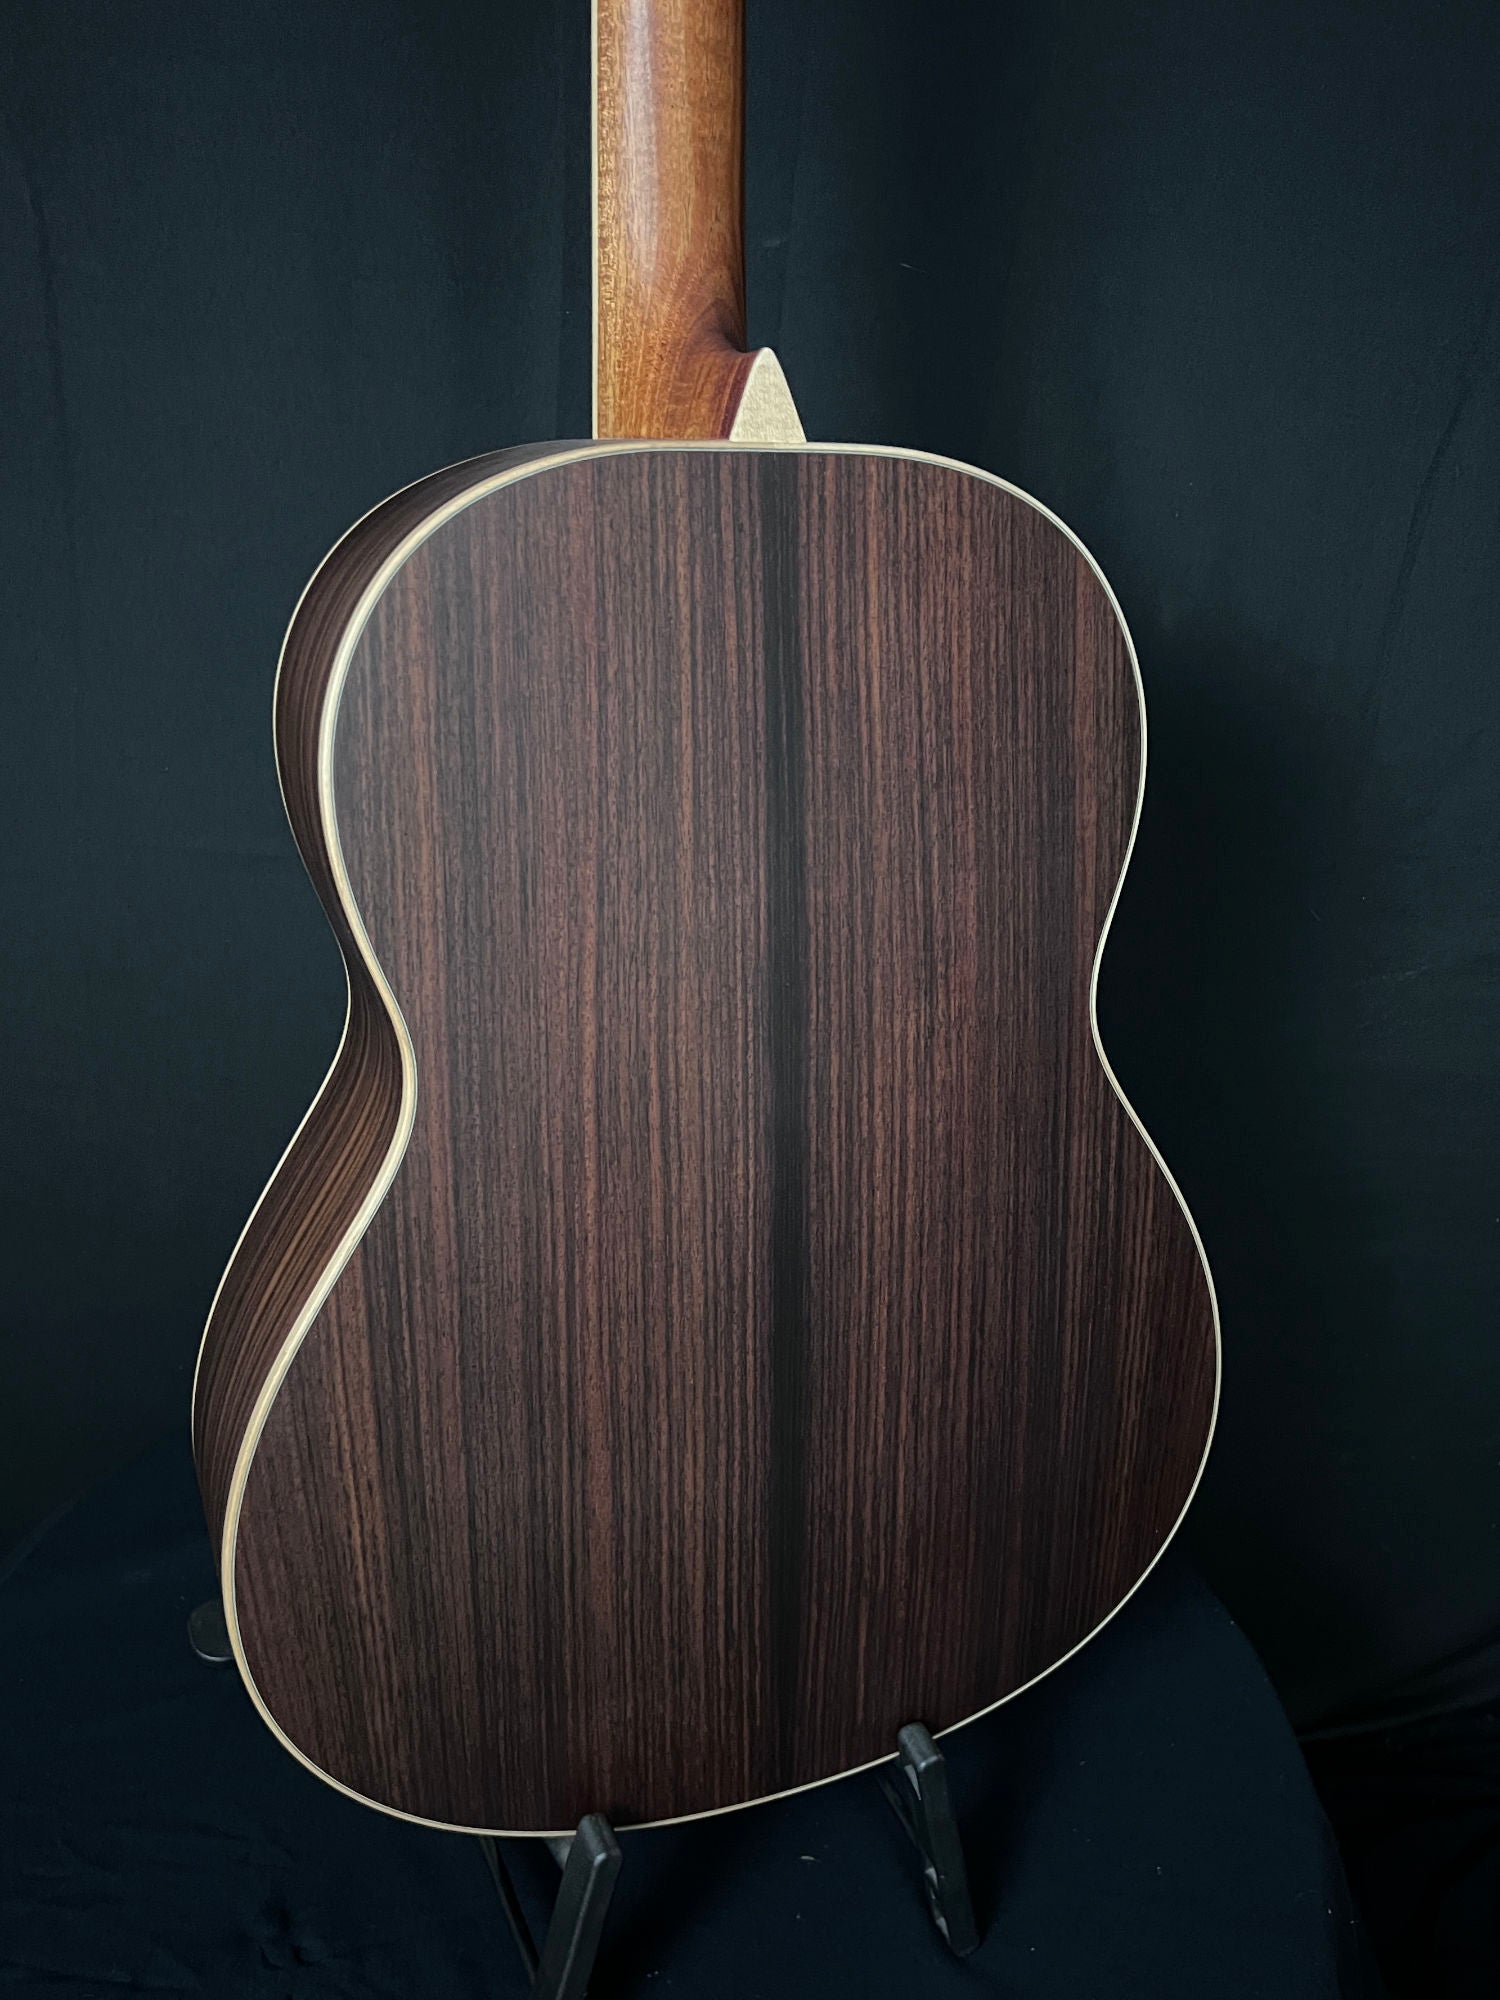 Larrivée L-03R Acoustic Guitar